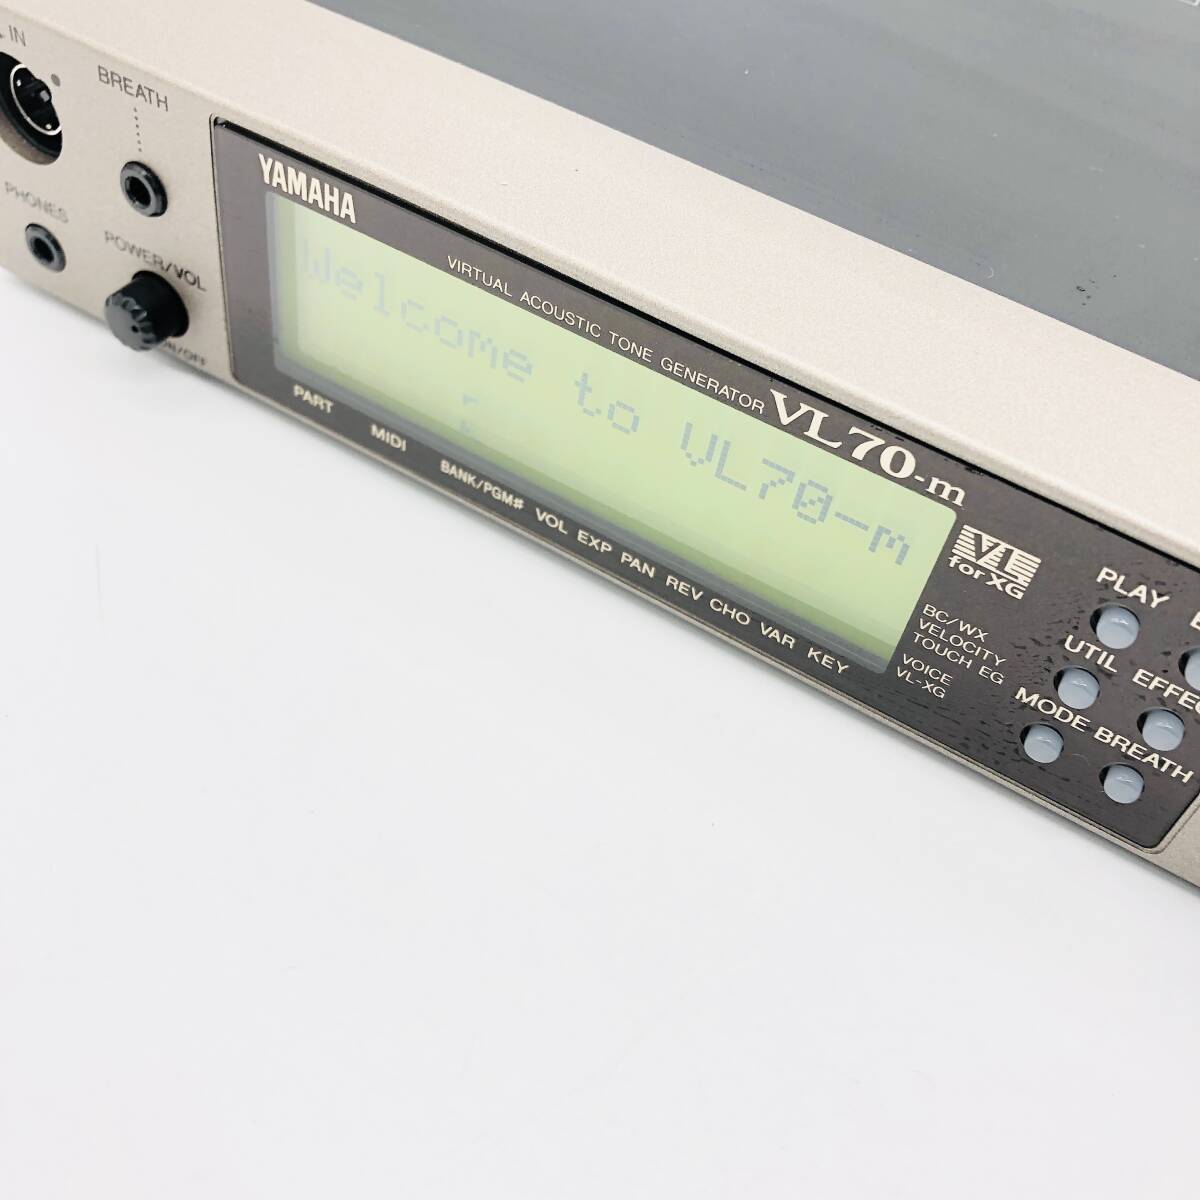  storage goods electrification verification settled YAMAHA Yamaha VL70-m tone generator audio equipment sound module VIRTUAL ACOUSTIC TONE GENERATOR